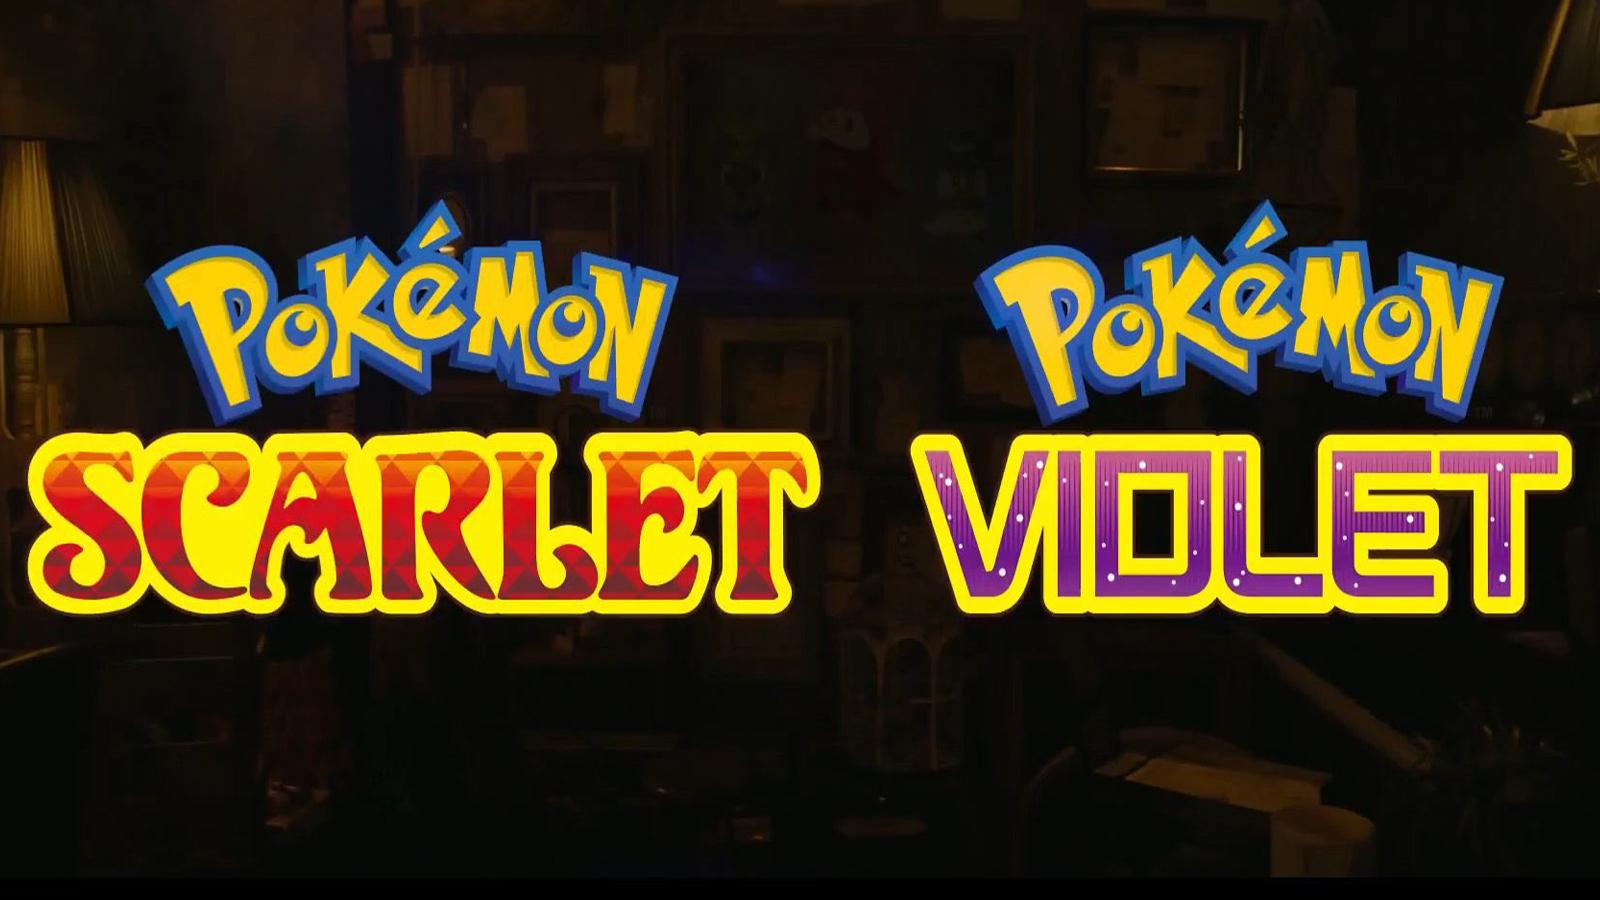 Pokemon Scarlet & Violet DLC rumors and leaks explained - Dexerto